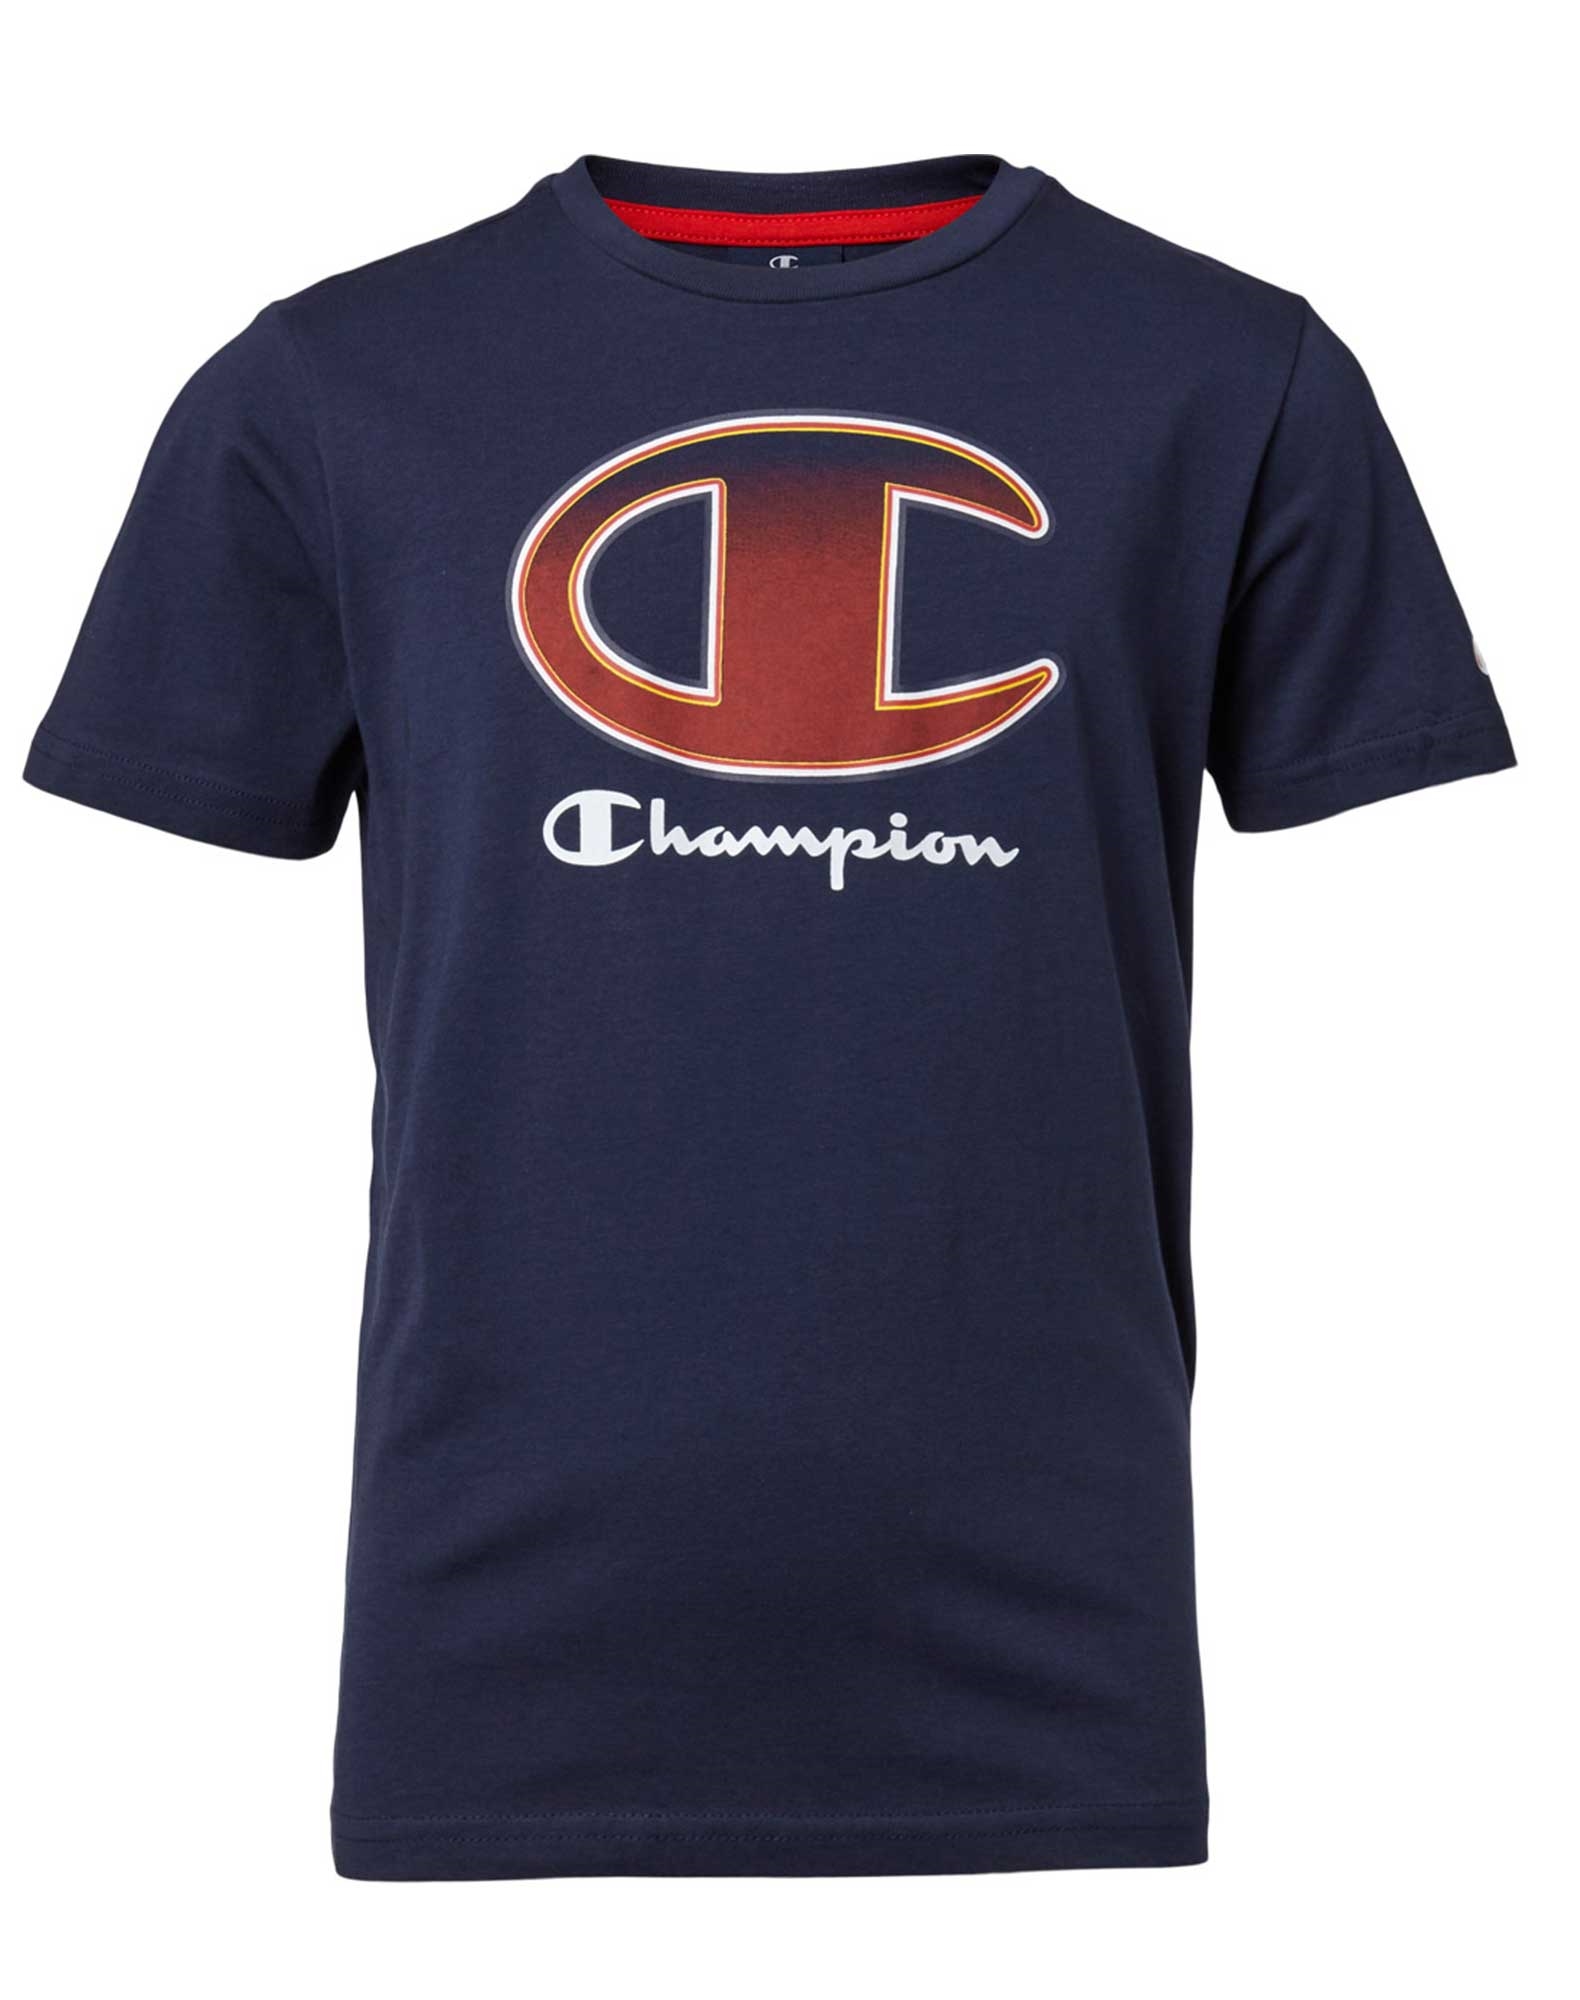 Sætte voksenalderen Nyttig Køb Champion Crewneck t-shirt til børn i navy